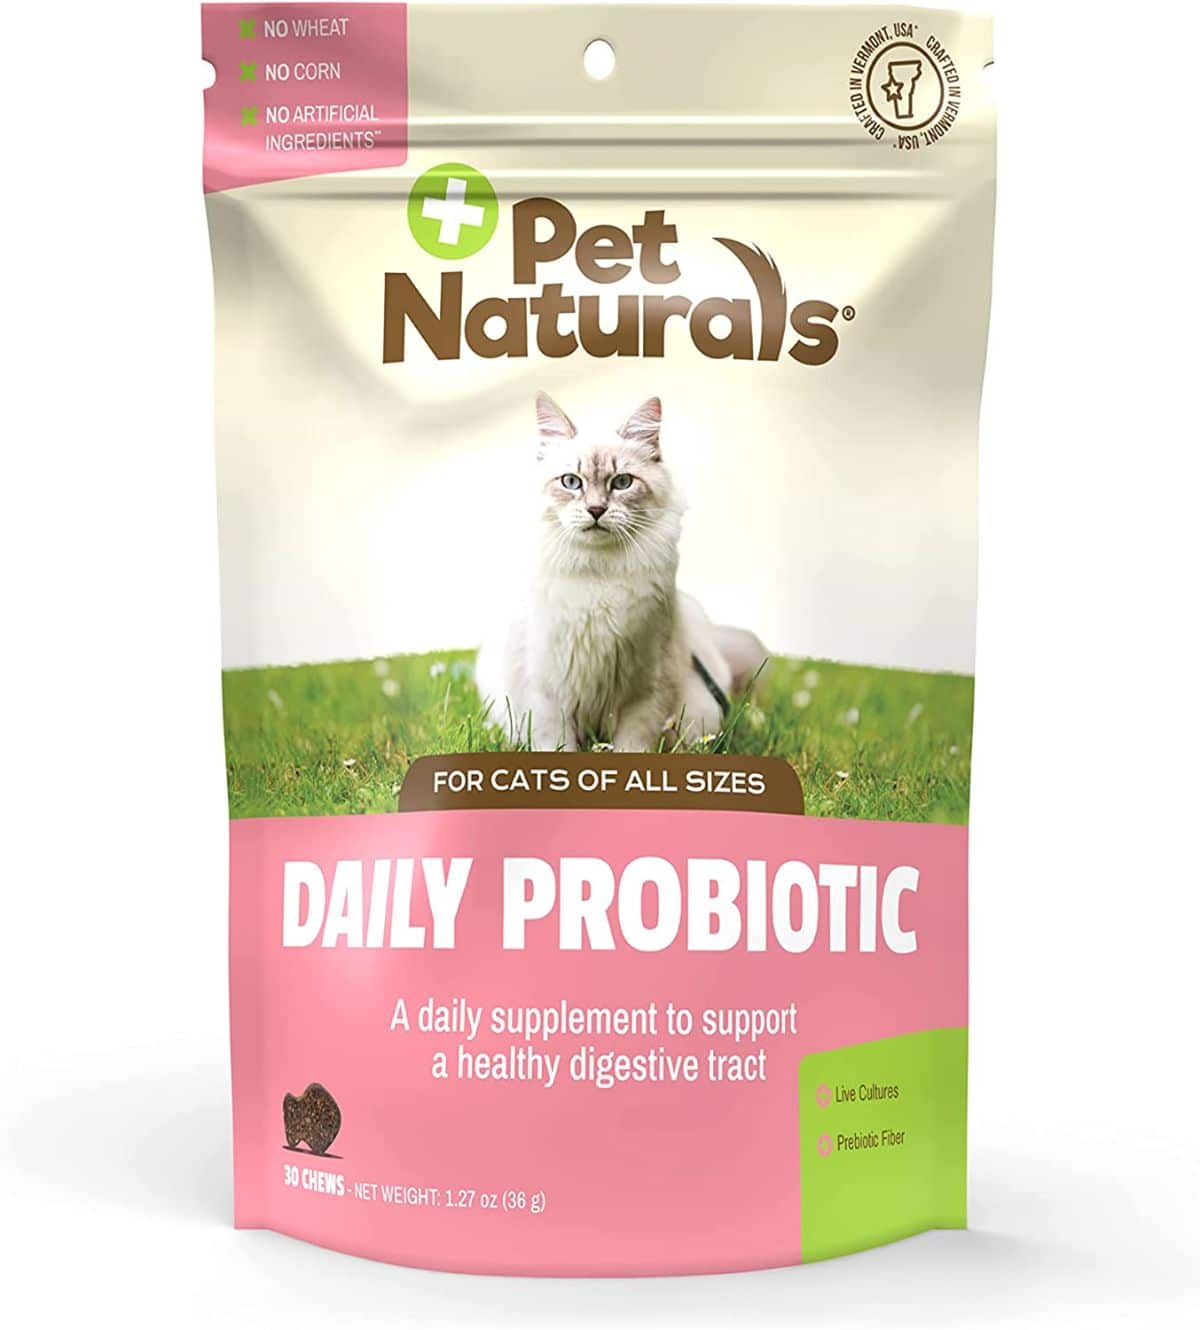 Pet Naturals Daily Probiotic